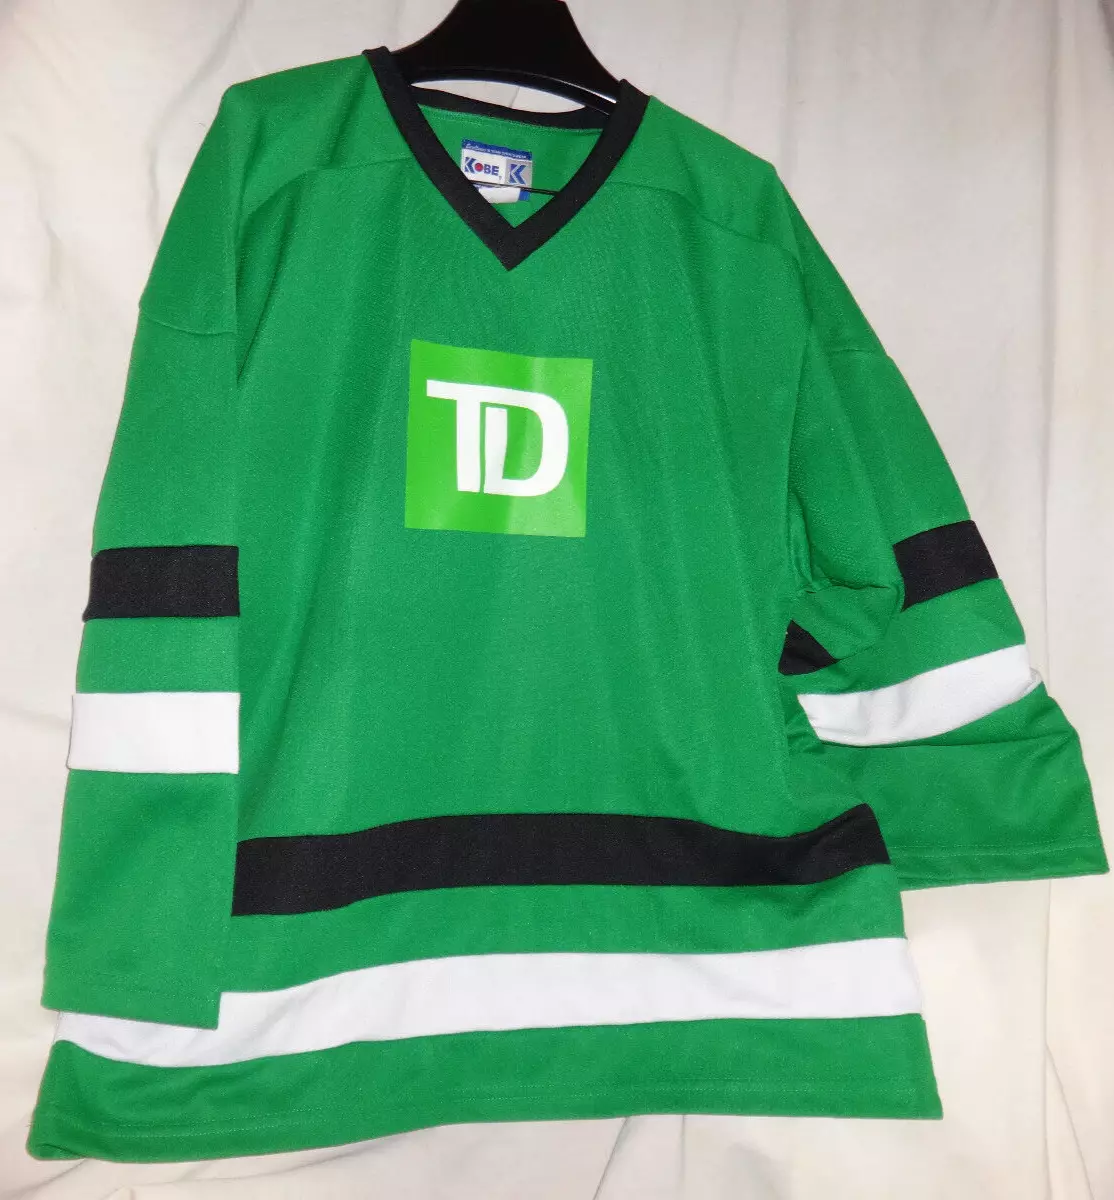 TD Bank Vancouver Canucks Sponsor Ice Hockey Jersey PROMO Sz L eBay